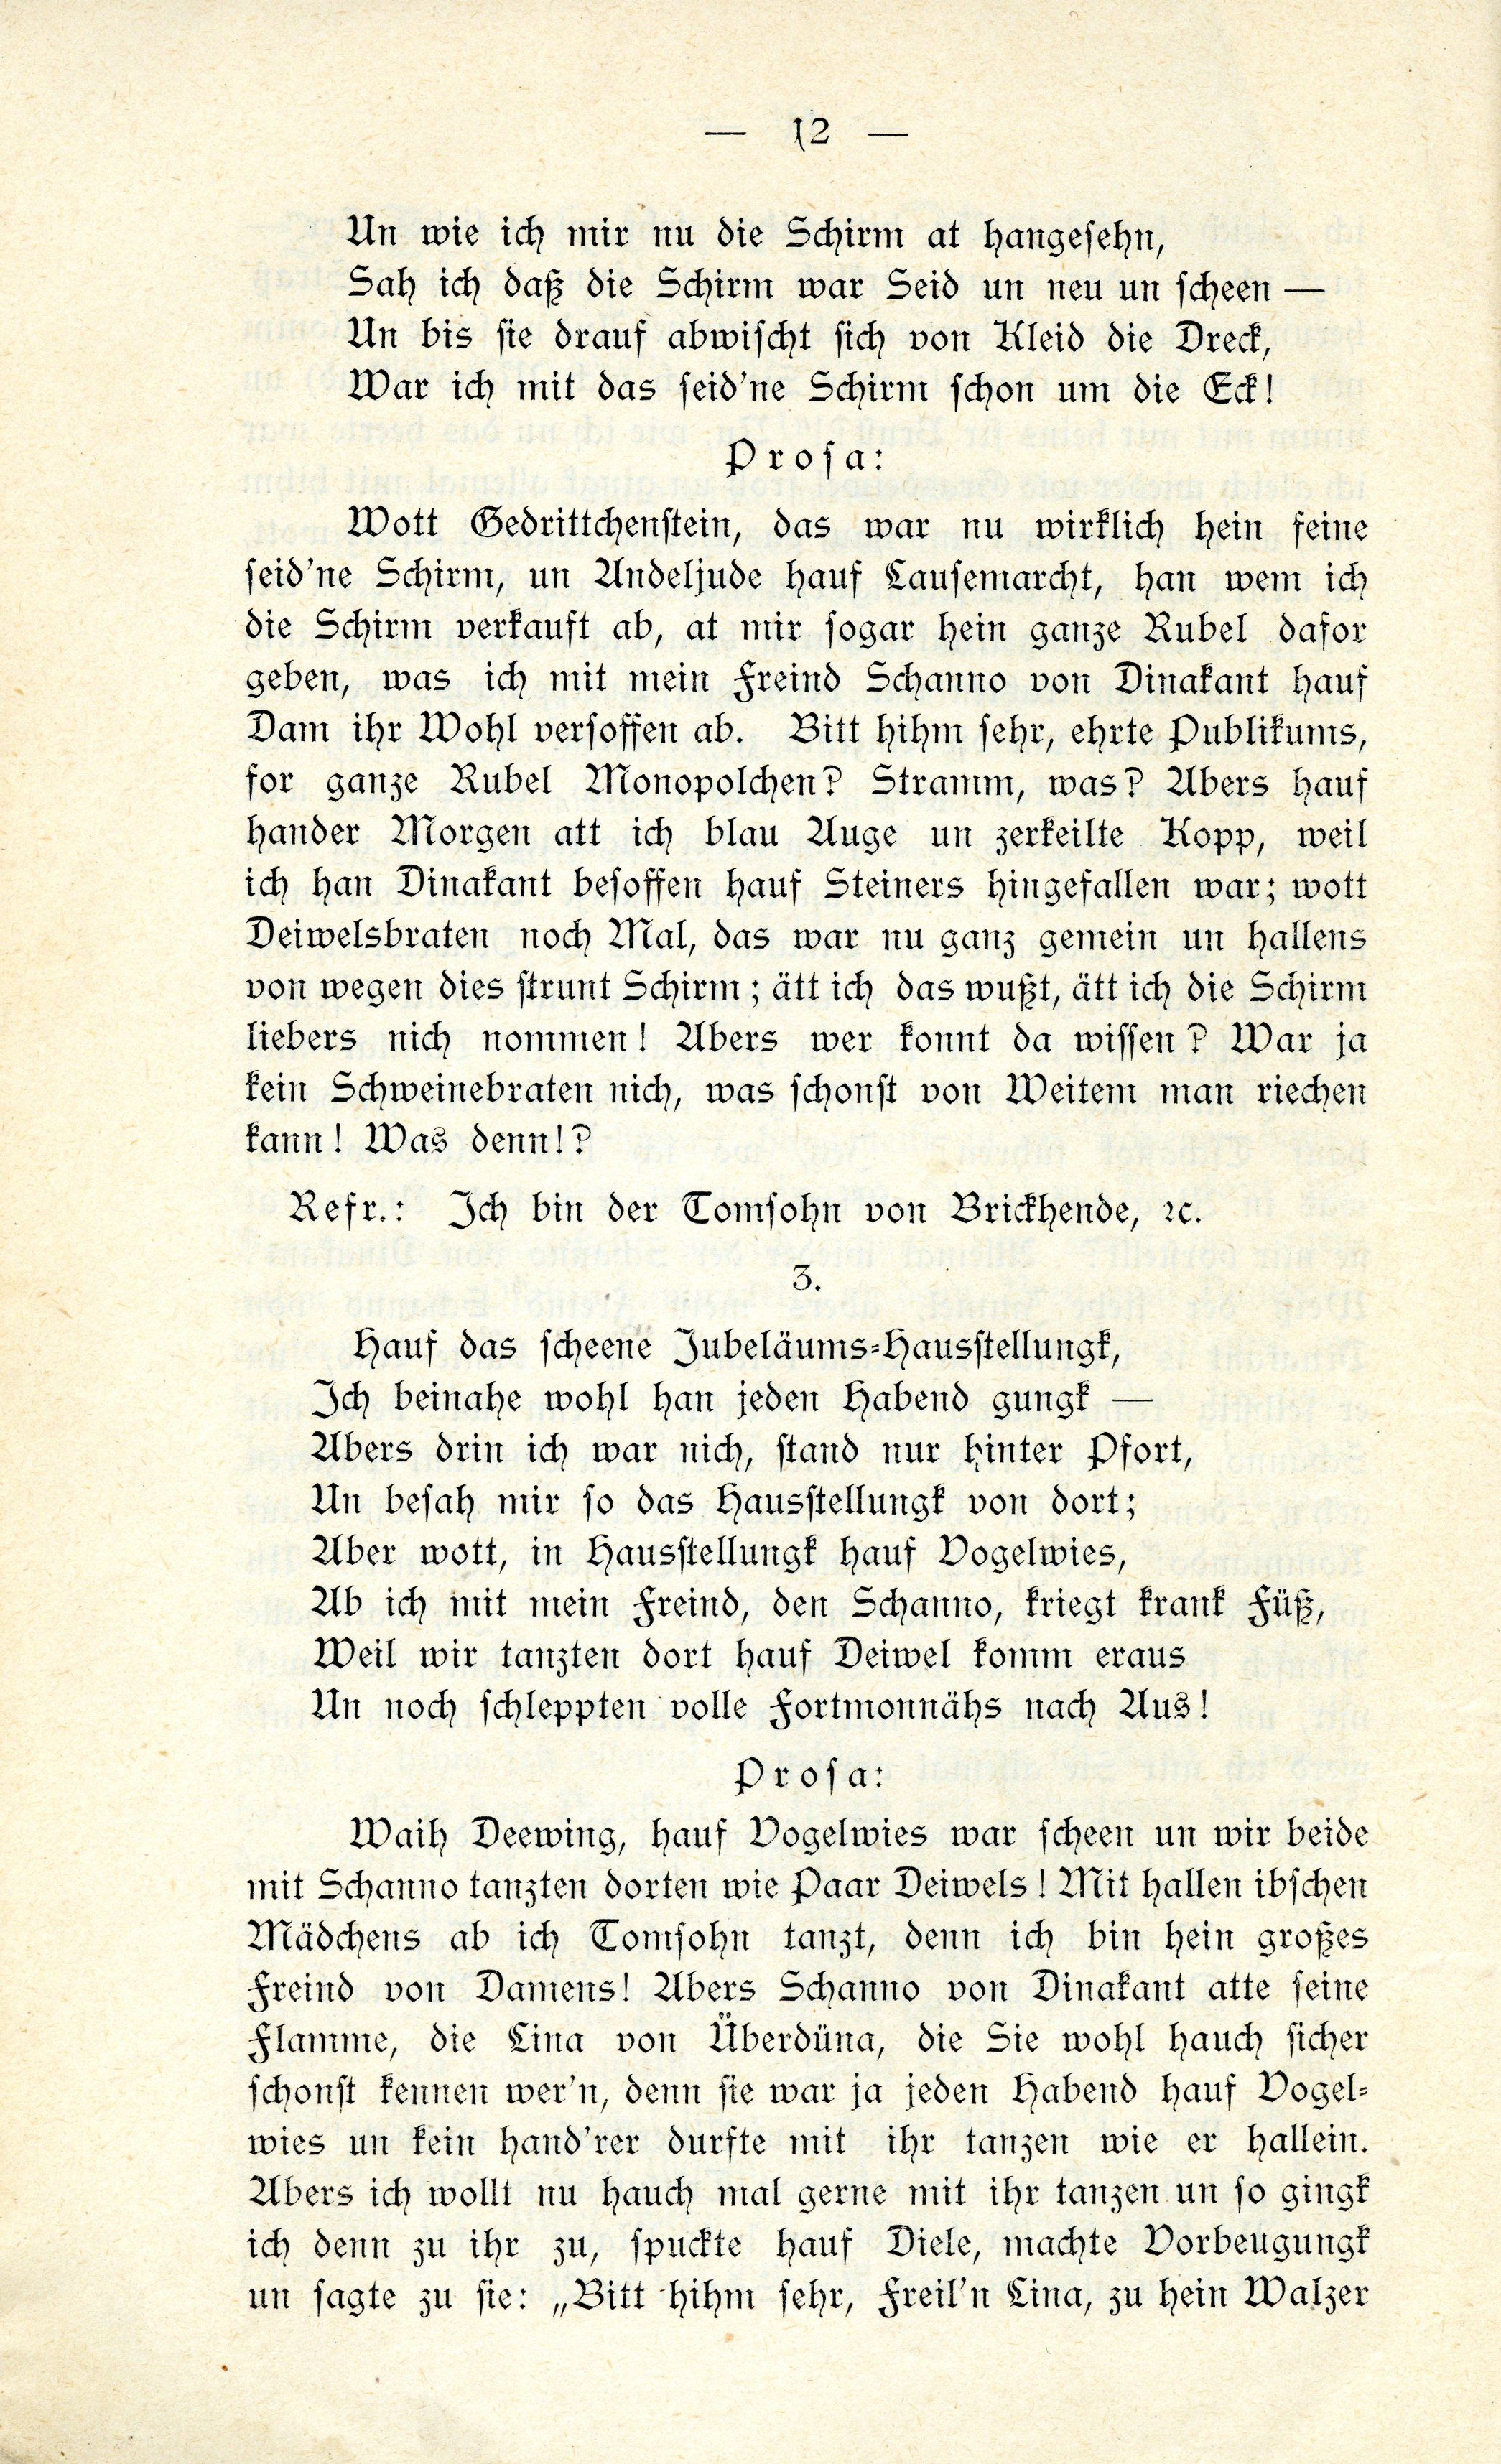 Schanno von Dünakant (1903) | 13. (12) Main body of text